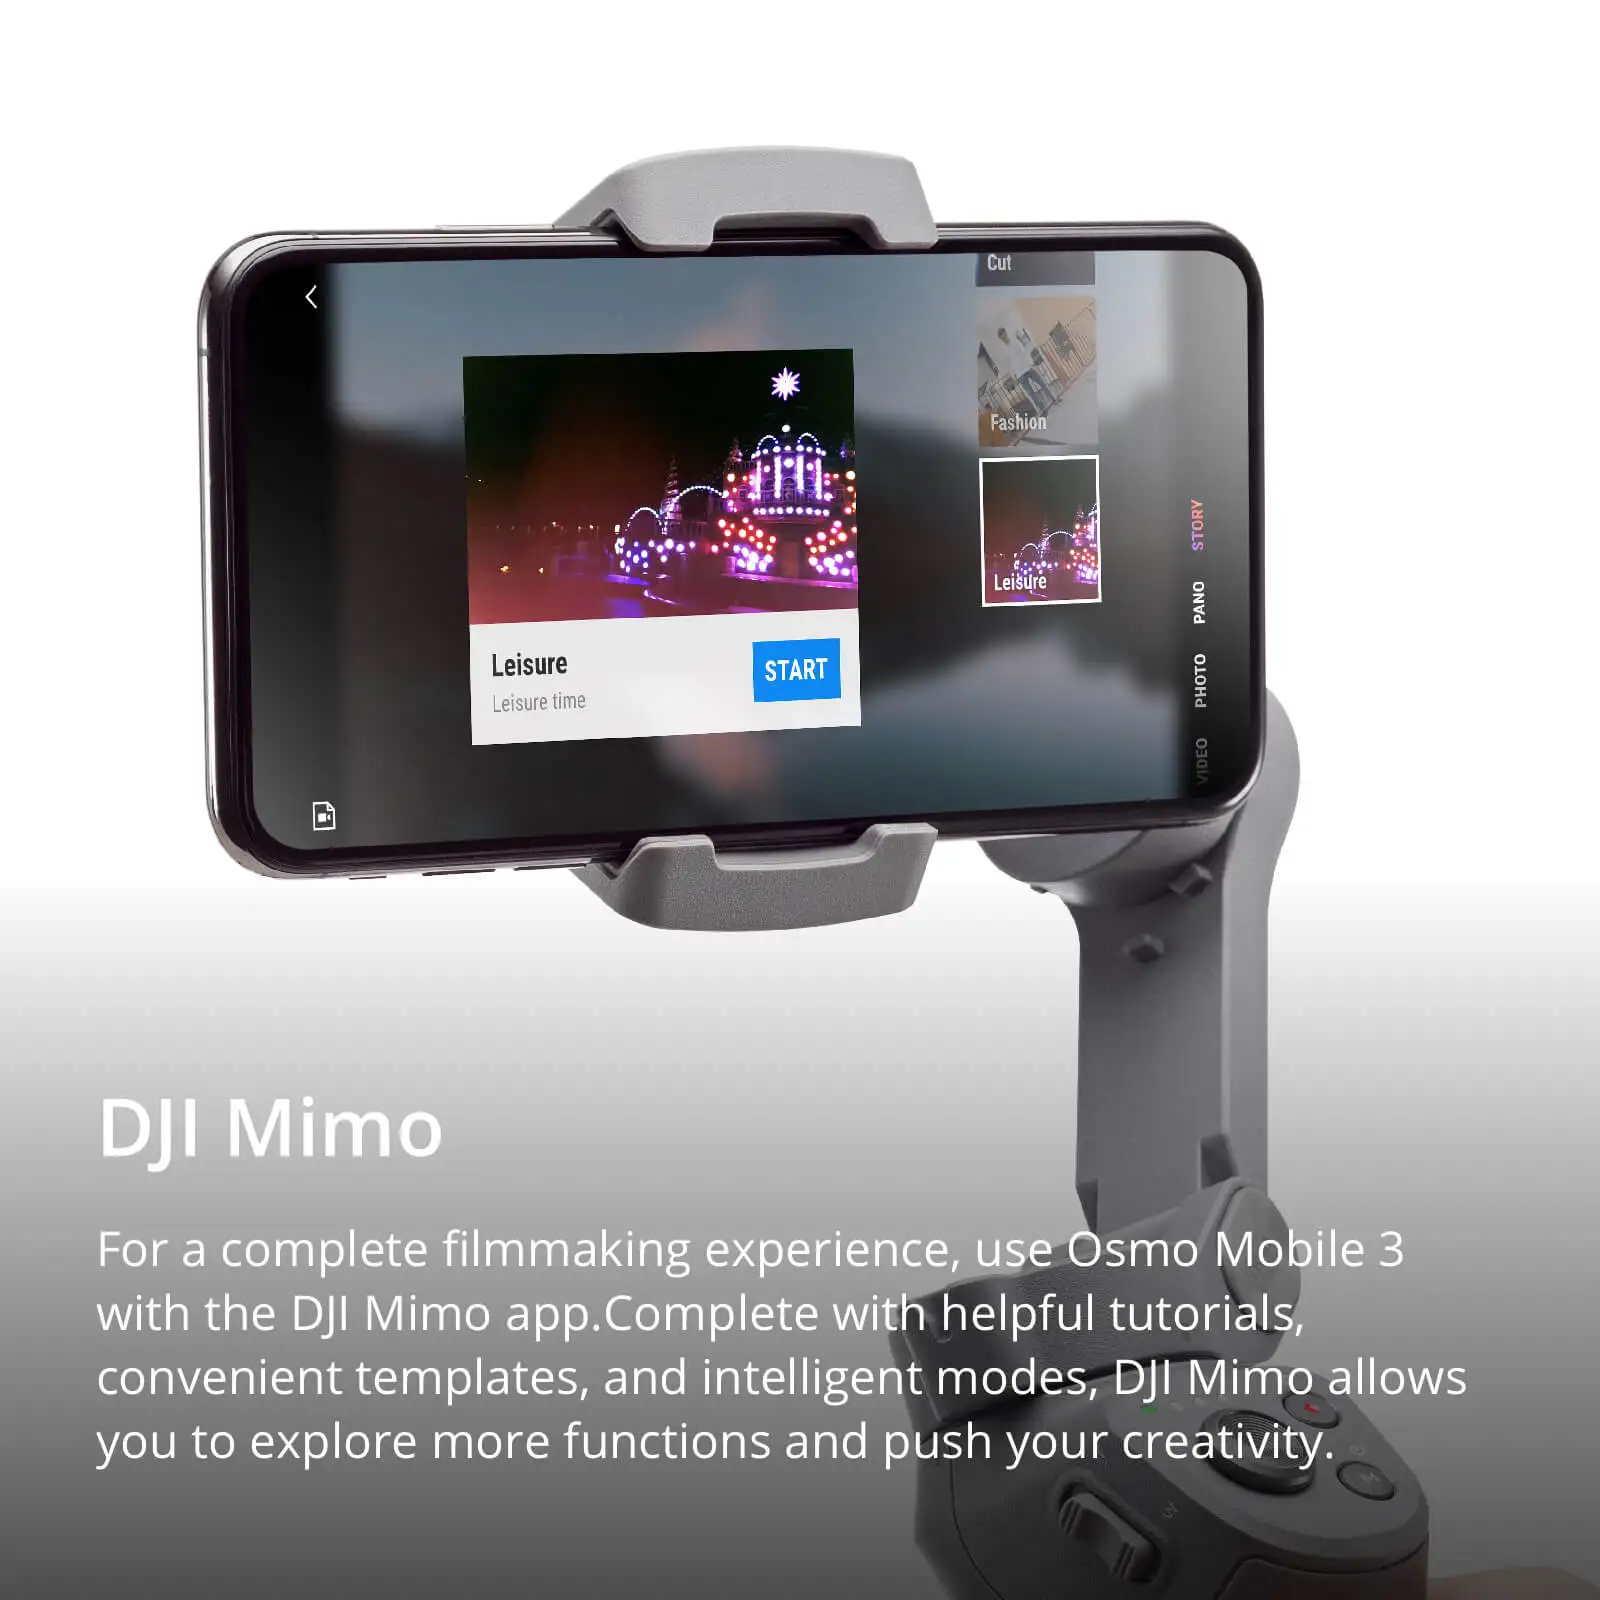 Inlock DJI Osmo Mobile 3 складной карданный 3-осевой шарнир для смартфонов с интеллектуальными функциями, обеспечивающими стабильный и гладкий отснятый материал